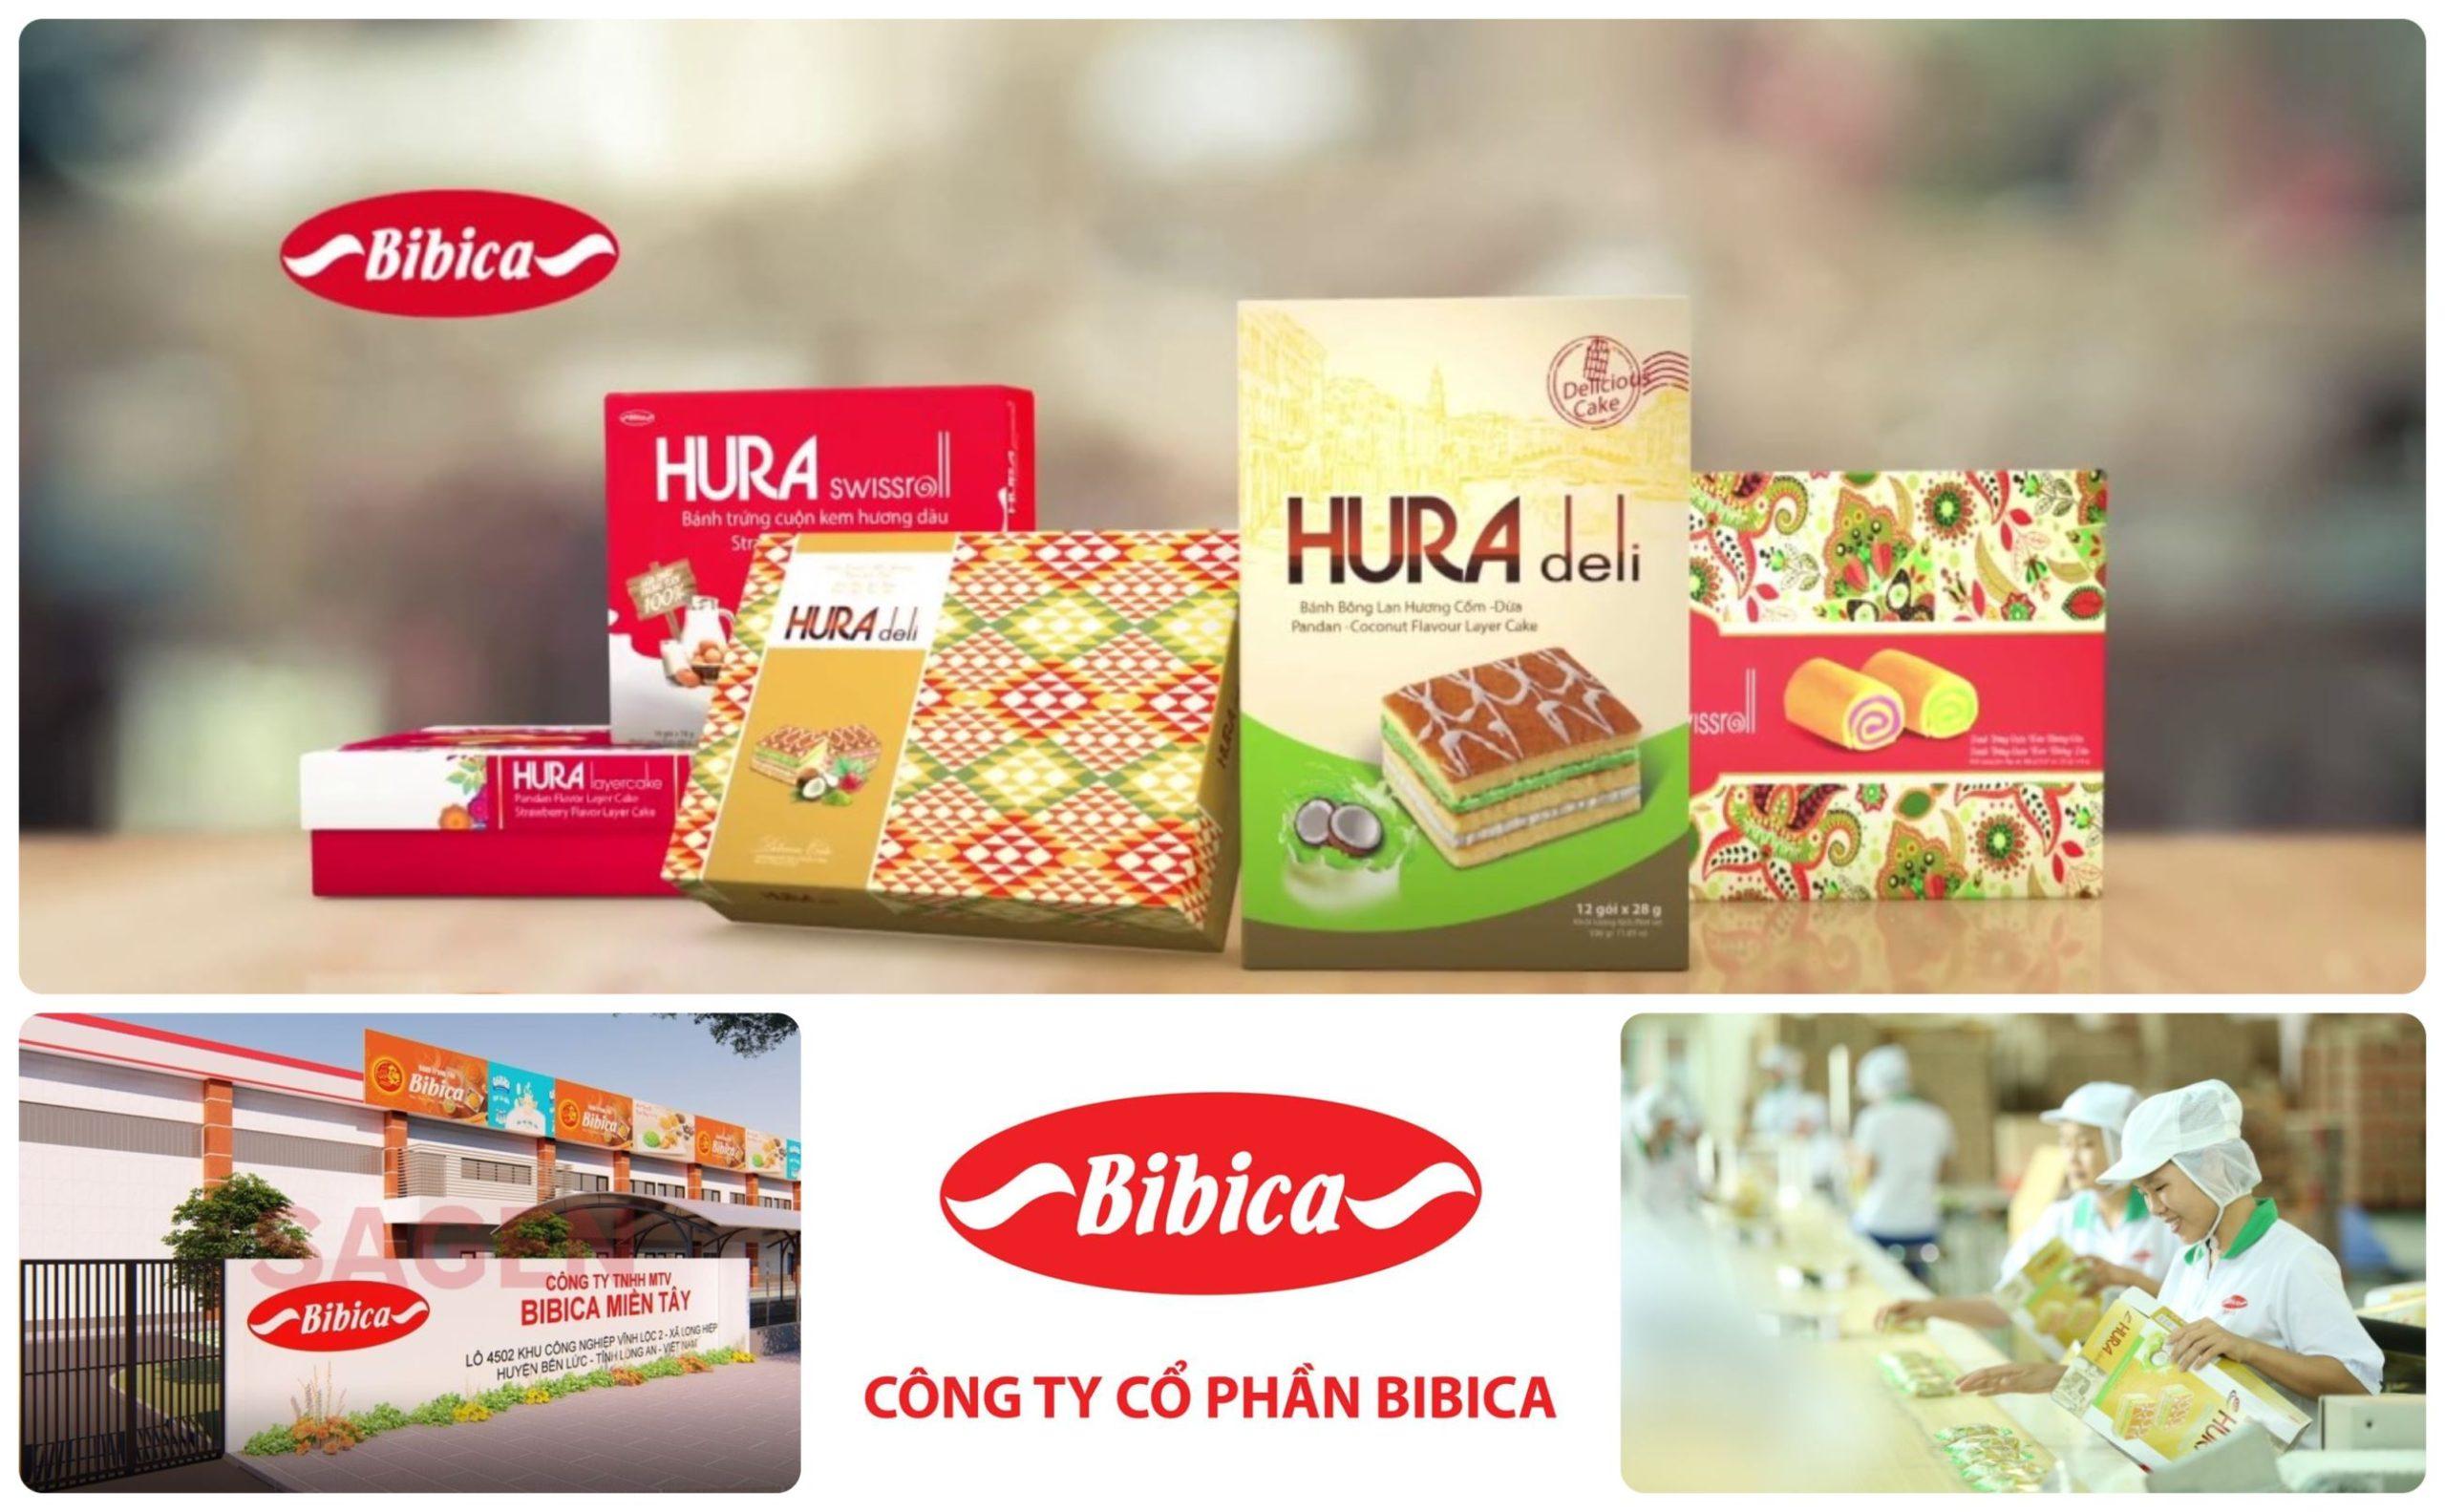 Công ty Đường Biên Hoà, cũng chính là tiền thân của Bibica, bắt đầu sản xuất bánh kẹo vào năm 1993 với ba dây chuyền sản xuất hiện đại theo công nghệ của châu Âu - Đài Loan (Ảnh: Internet)